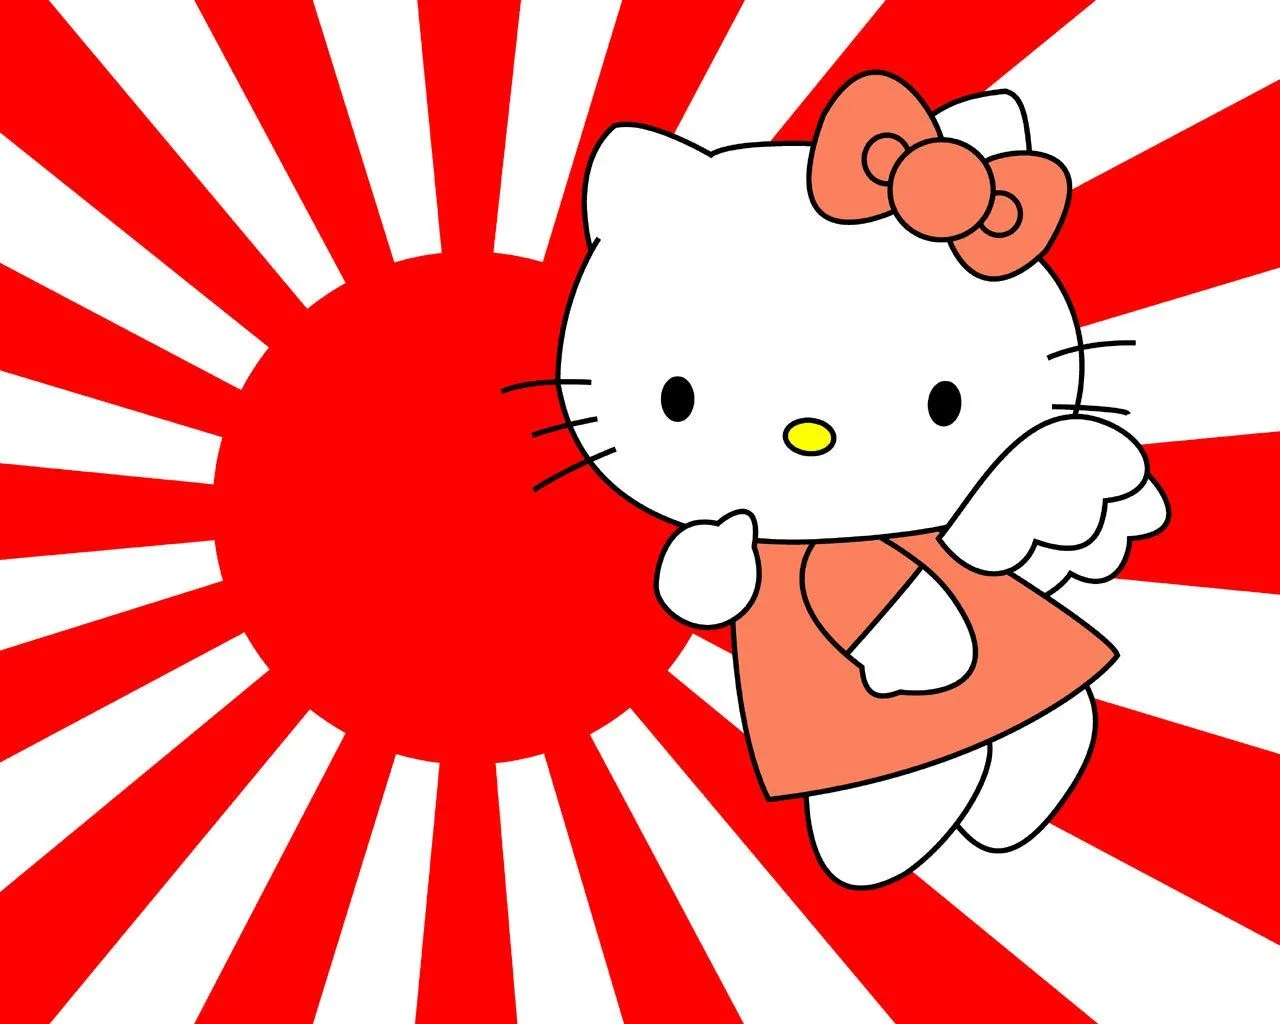 Descargar gratis fondo de pantalla infantil para niños de Hello Kitty ...